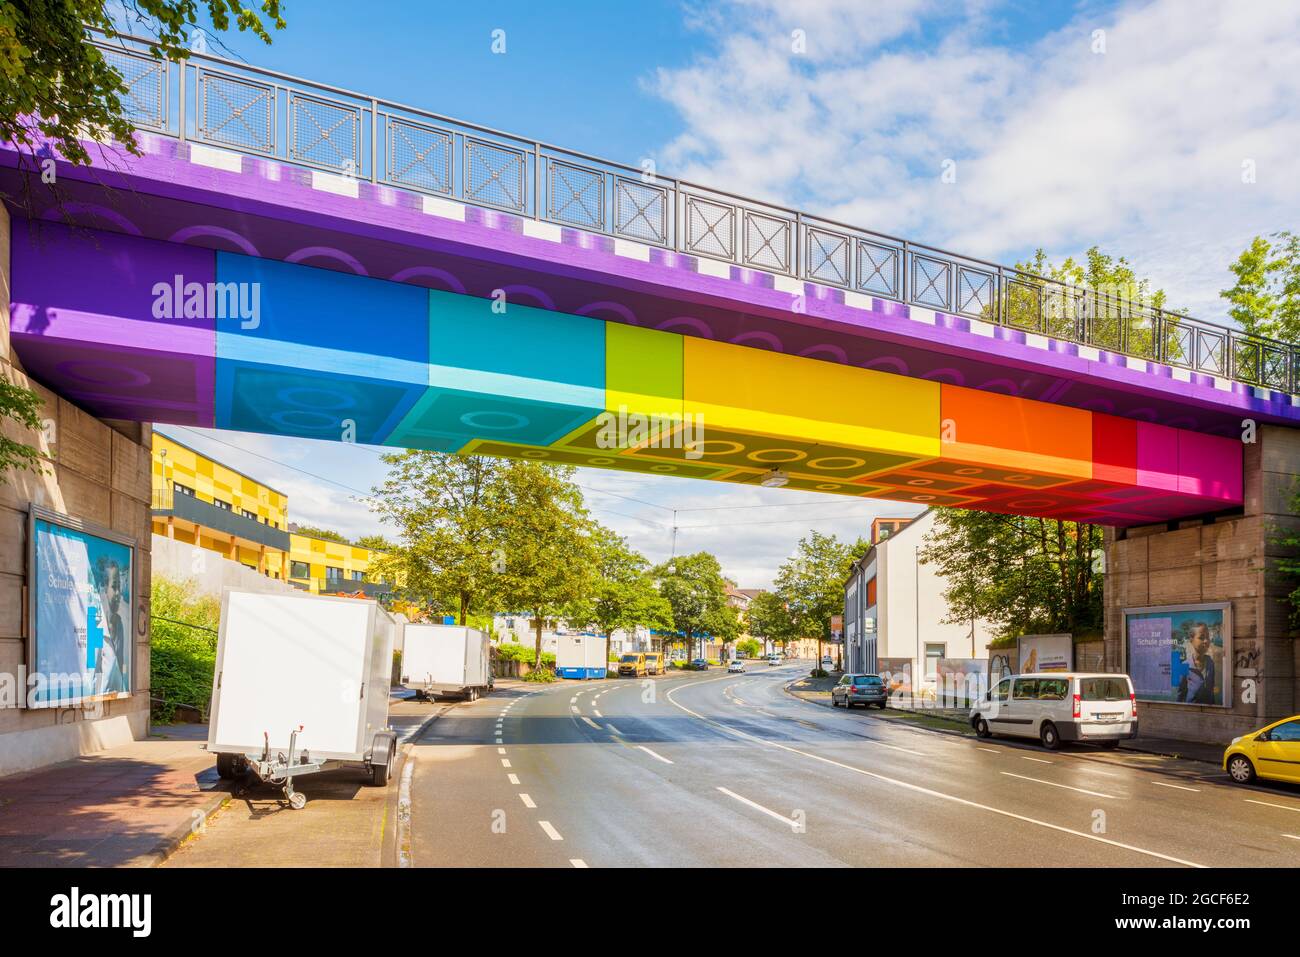 El Lego Bridge 2,0 o Rainbow Bridge en Wuppertal, Alemania, pintado en julio de 2020 por el artista de graffiti Martin Heuwold al estilo de los ladrillos Lego Foto de stock